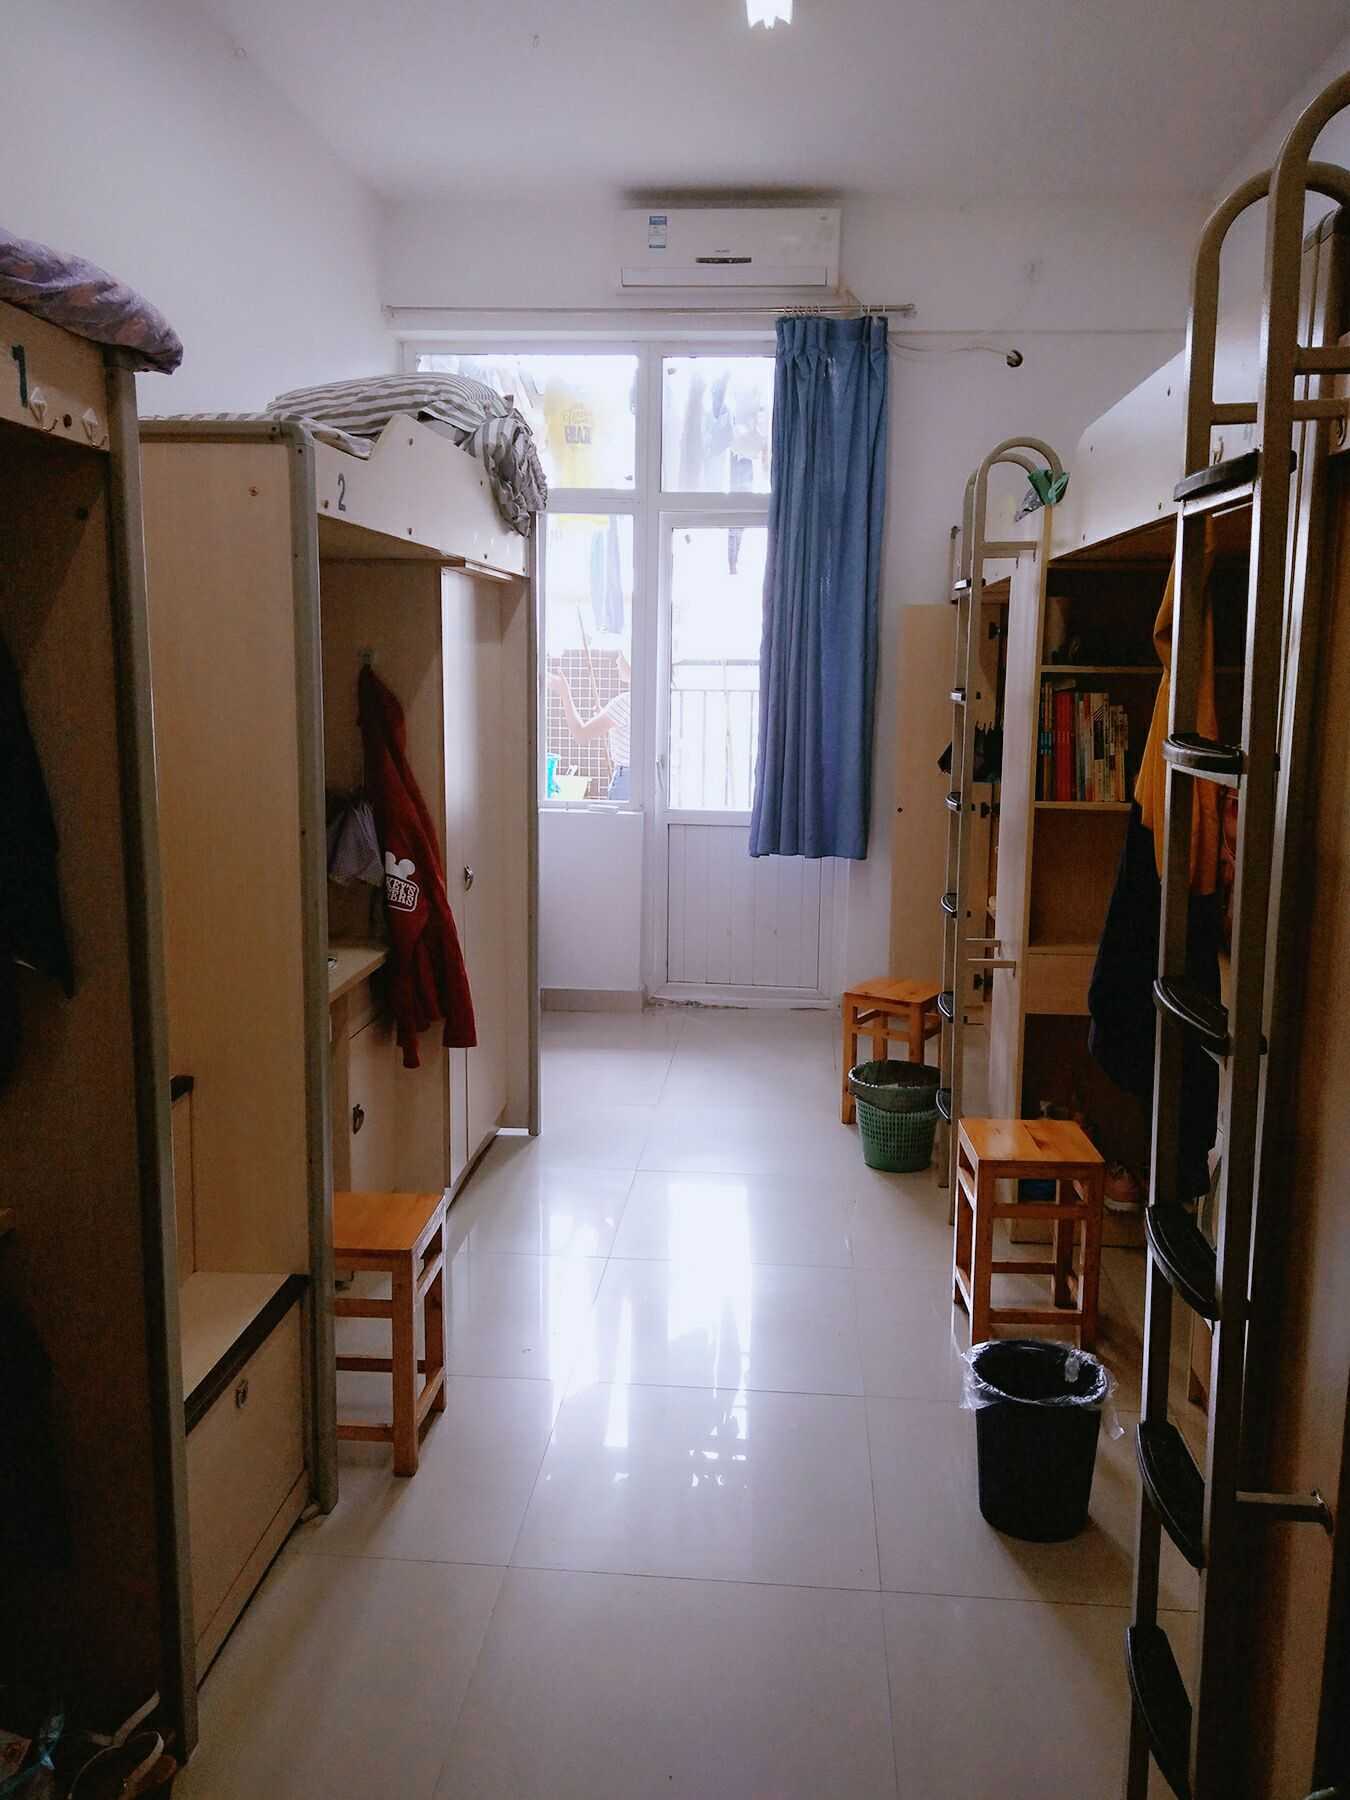 重庆旅游职业学院宿舍图片